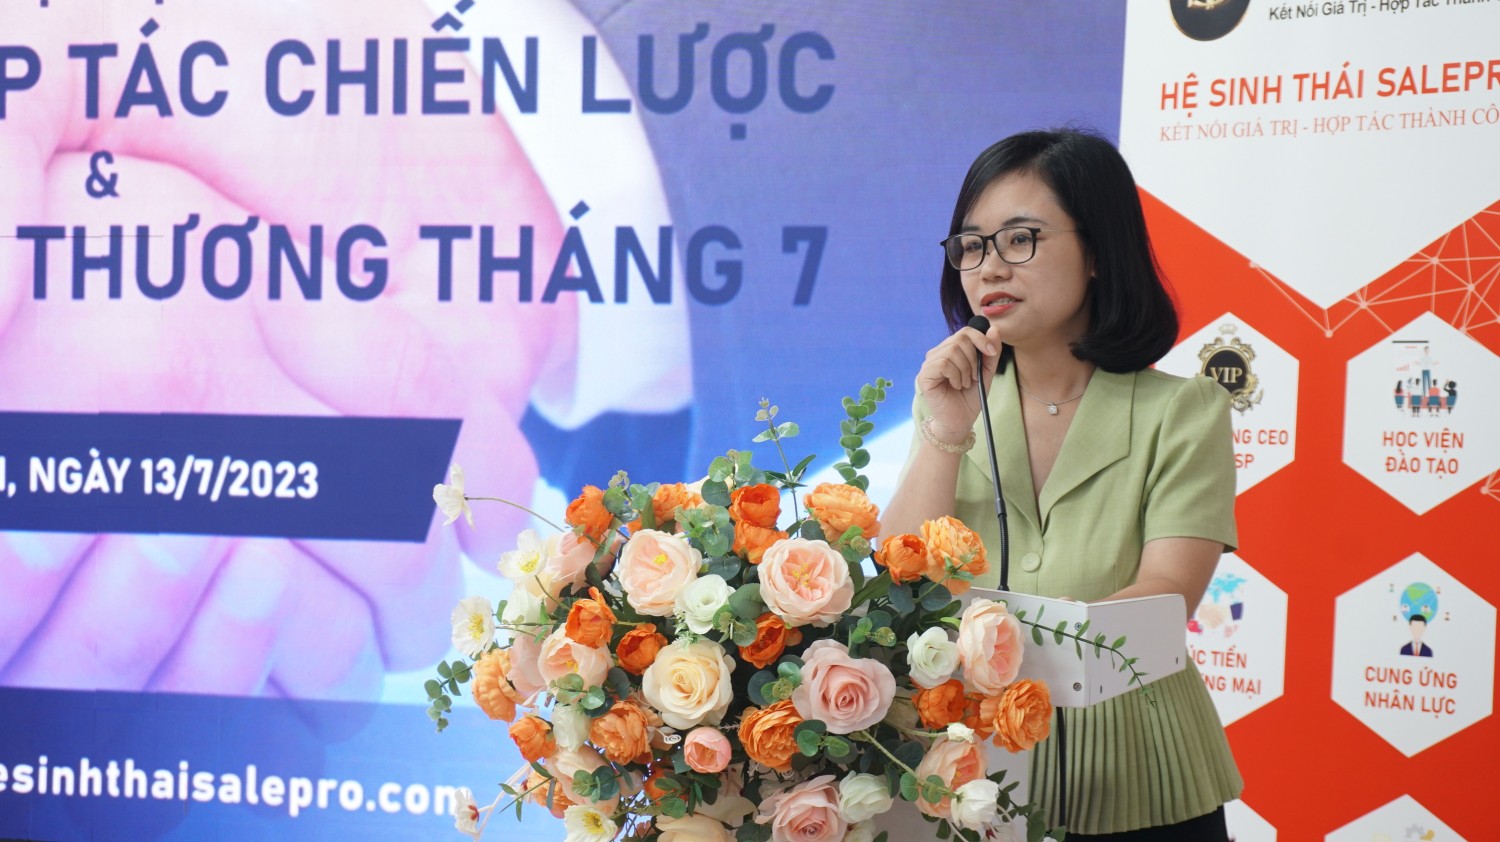 Bà Bùi Thị Vân Anh, Tổng Giám đốc Công ty Cổ phần Hệ sinh thái Salepro